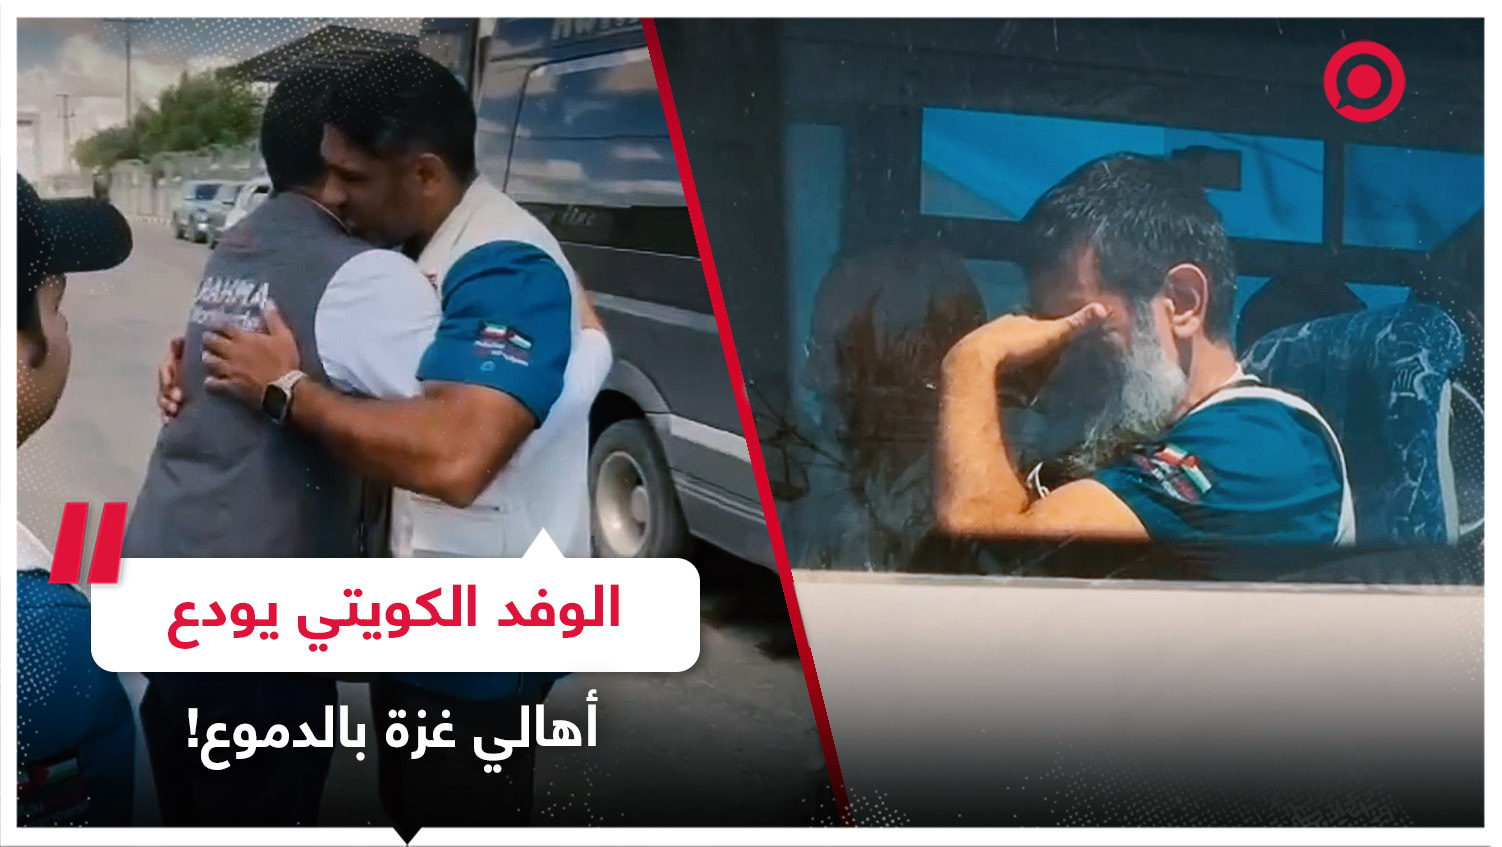 أطباء الوفد الكويتي يودعون أهالي مدينة رفح بالدموع قبل خروجهم من قطاع غزة